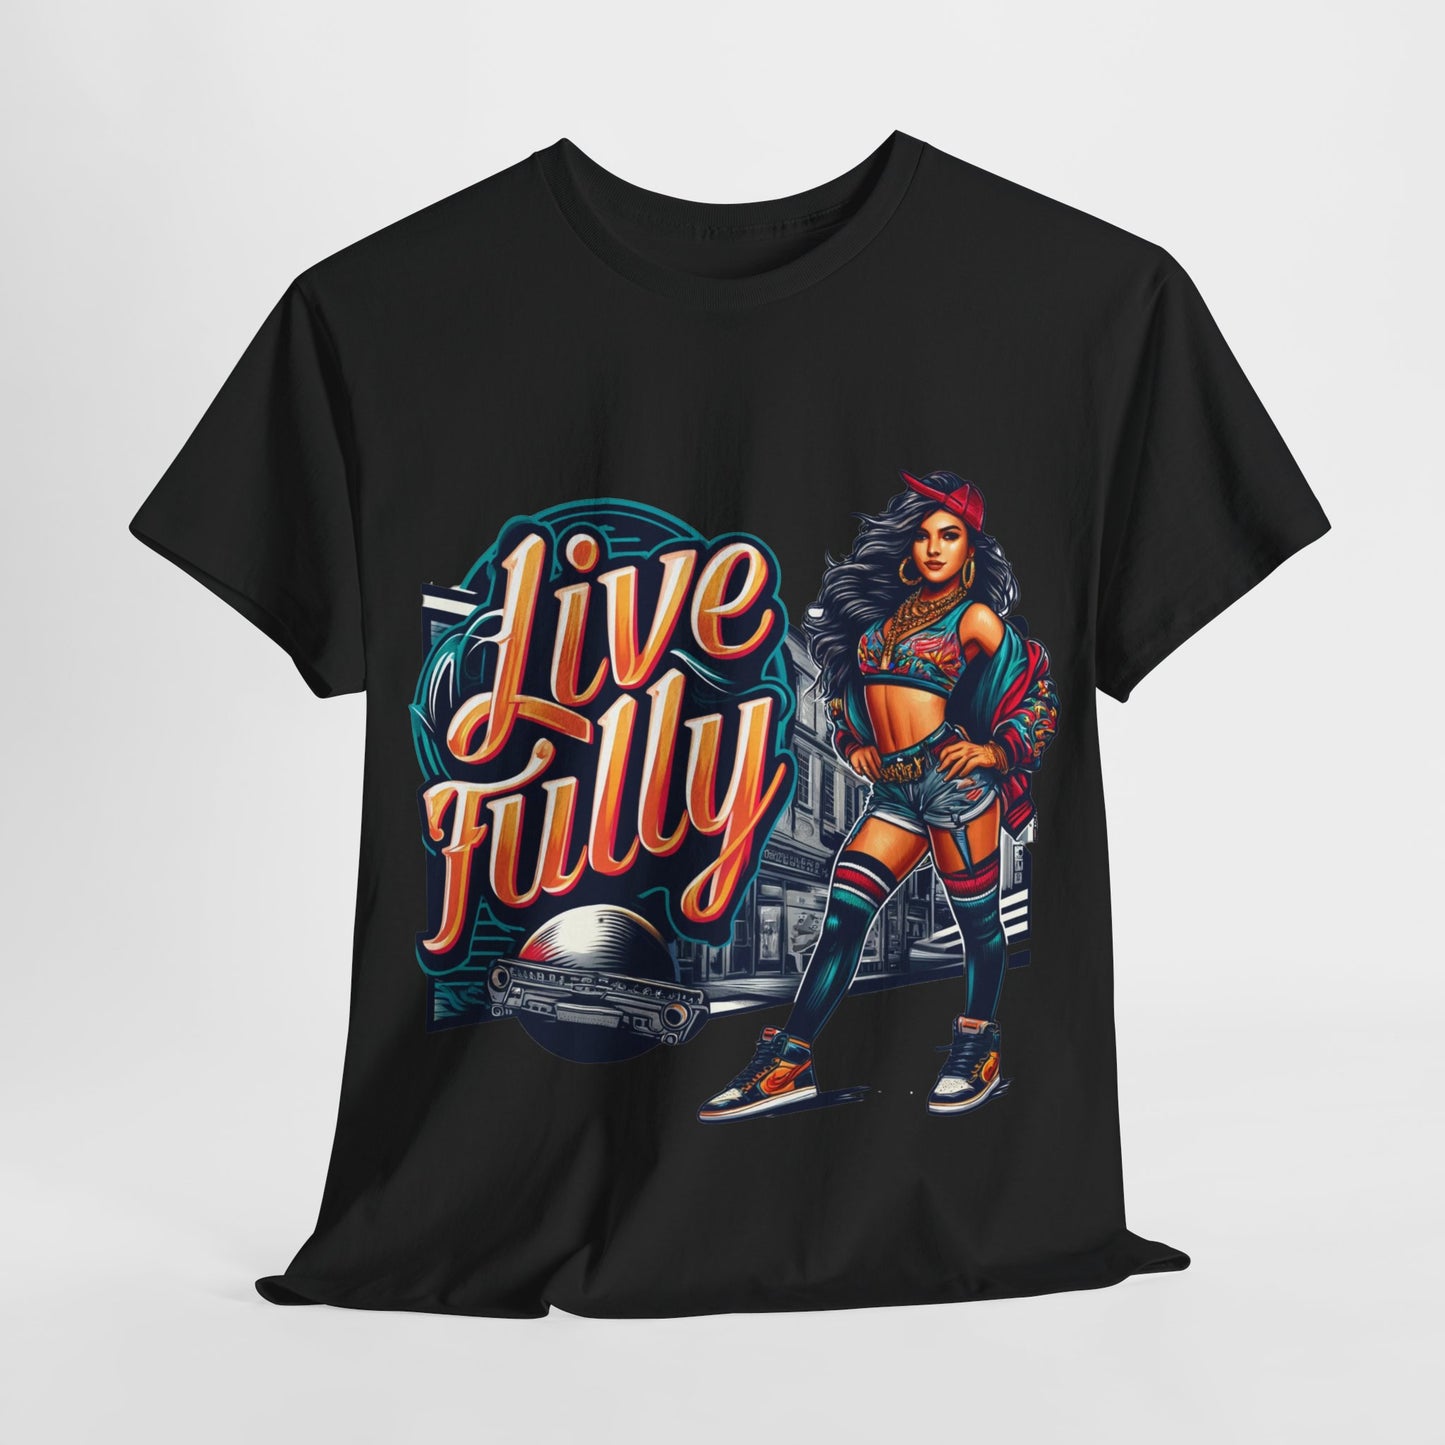 Y.M.L.Y. "Live Fully" T-Shirt Motivational Wear Urban Wear Street Wear Street Art Classic Tee Unisex